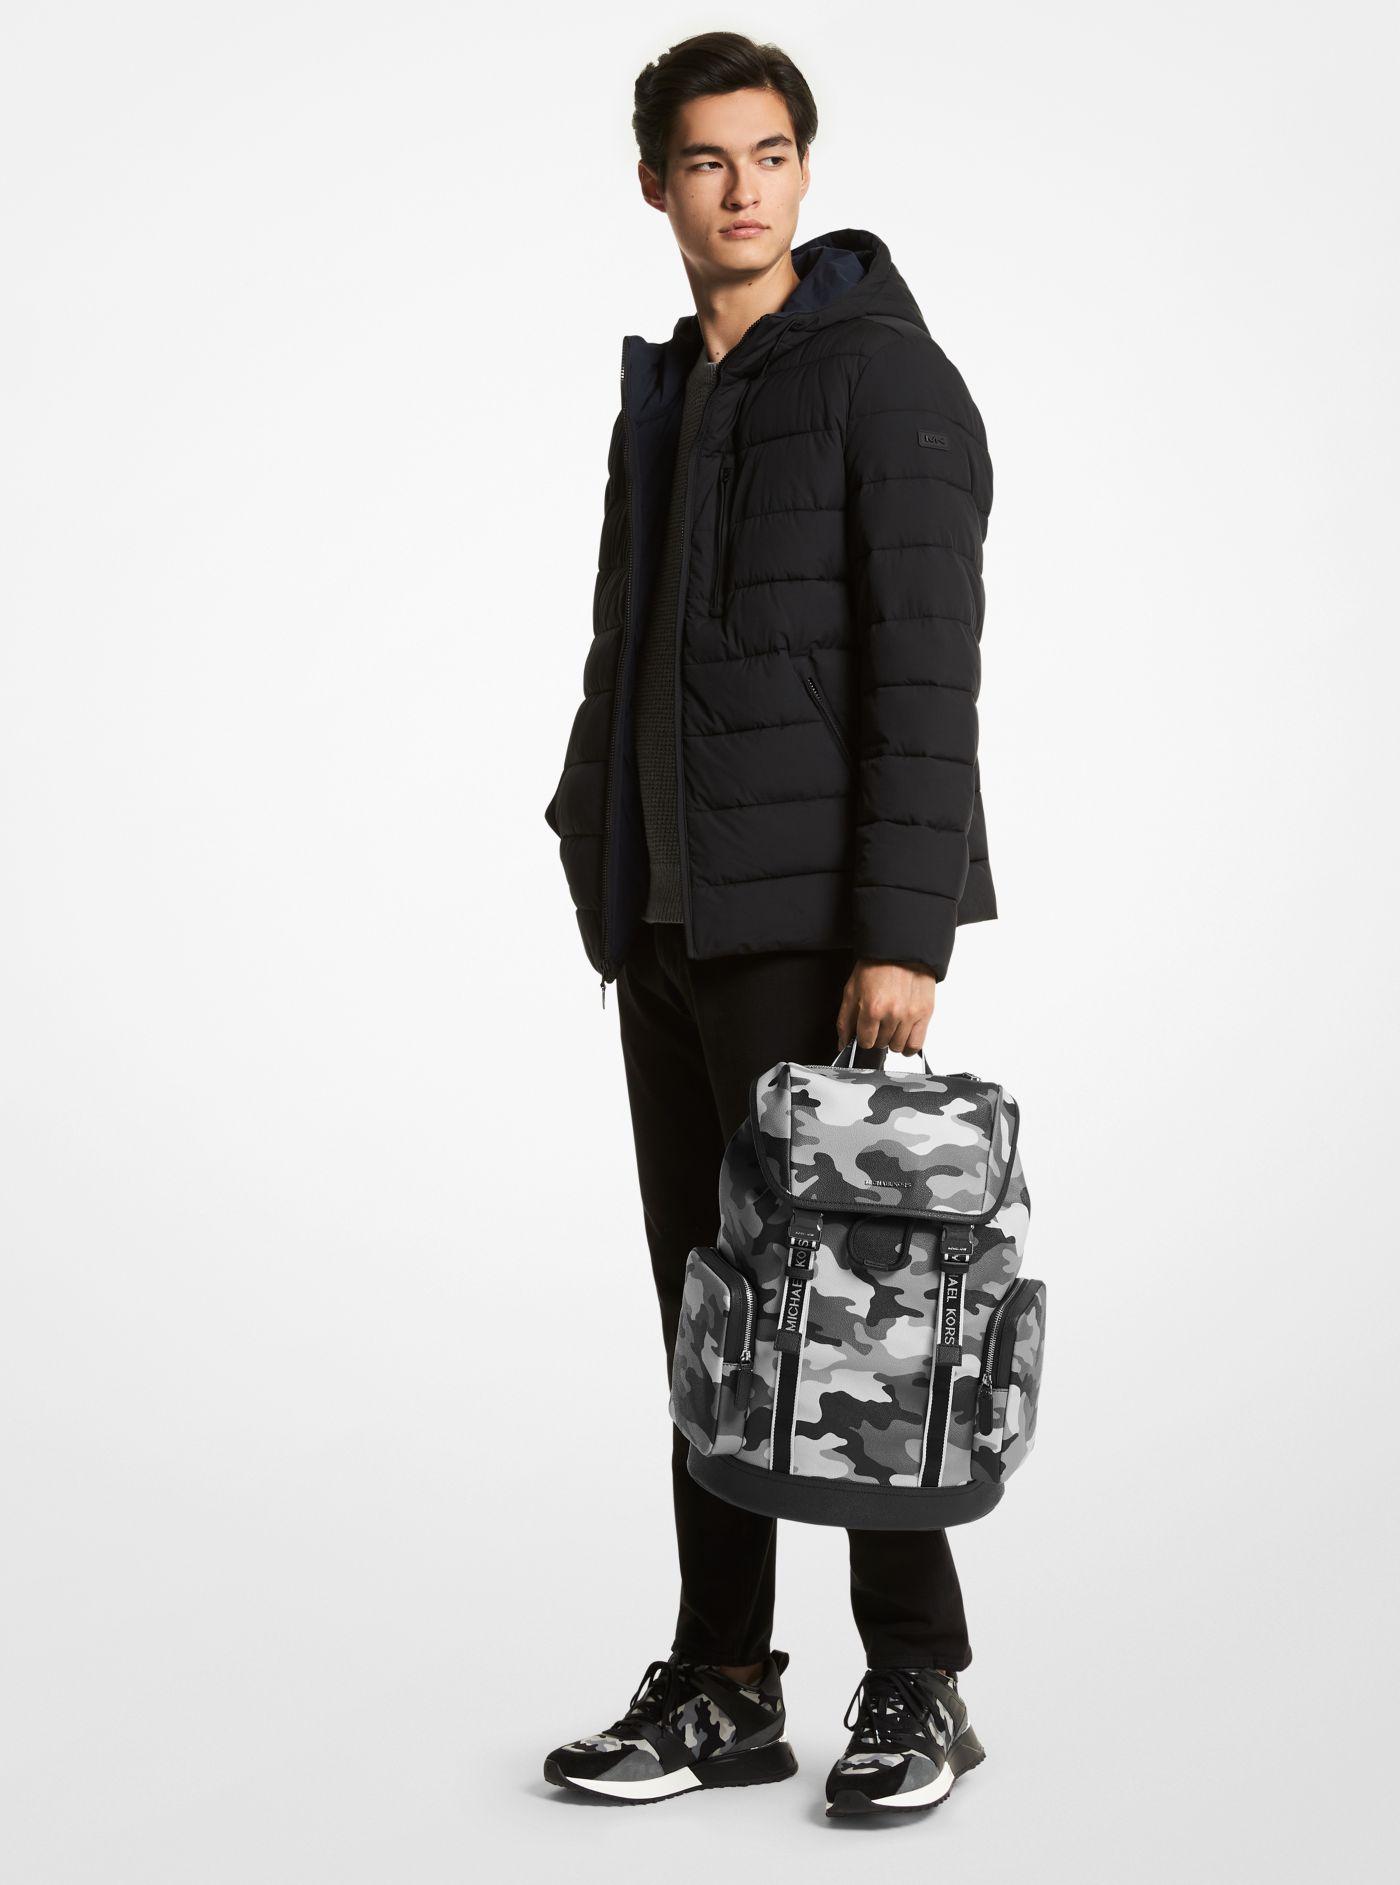 Michael Kors Hudson Camouflage Backpack in Gray for Men | Lyst